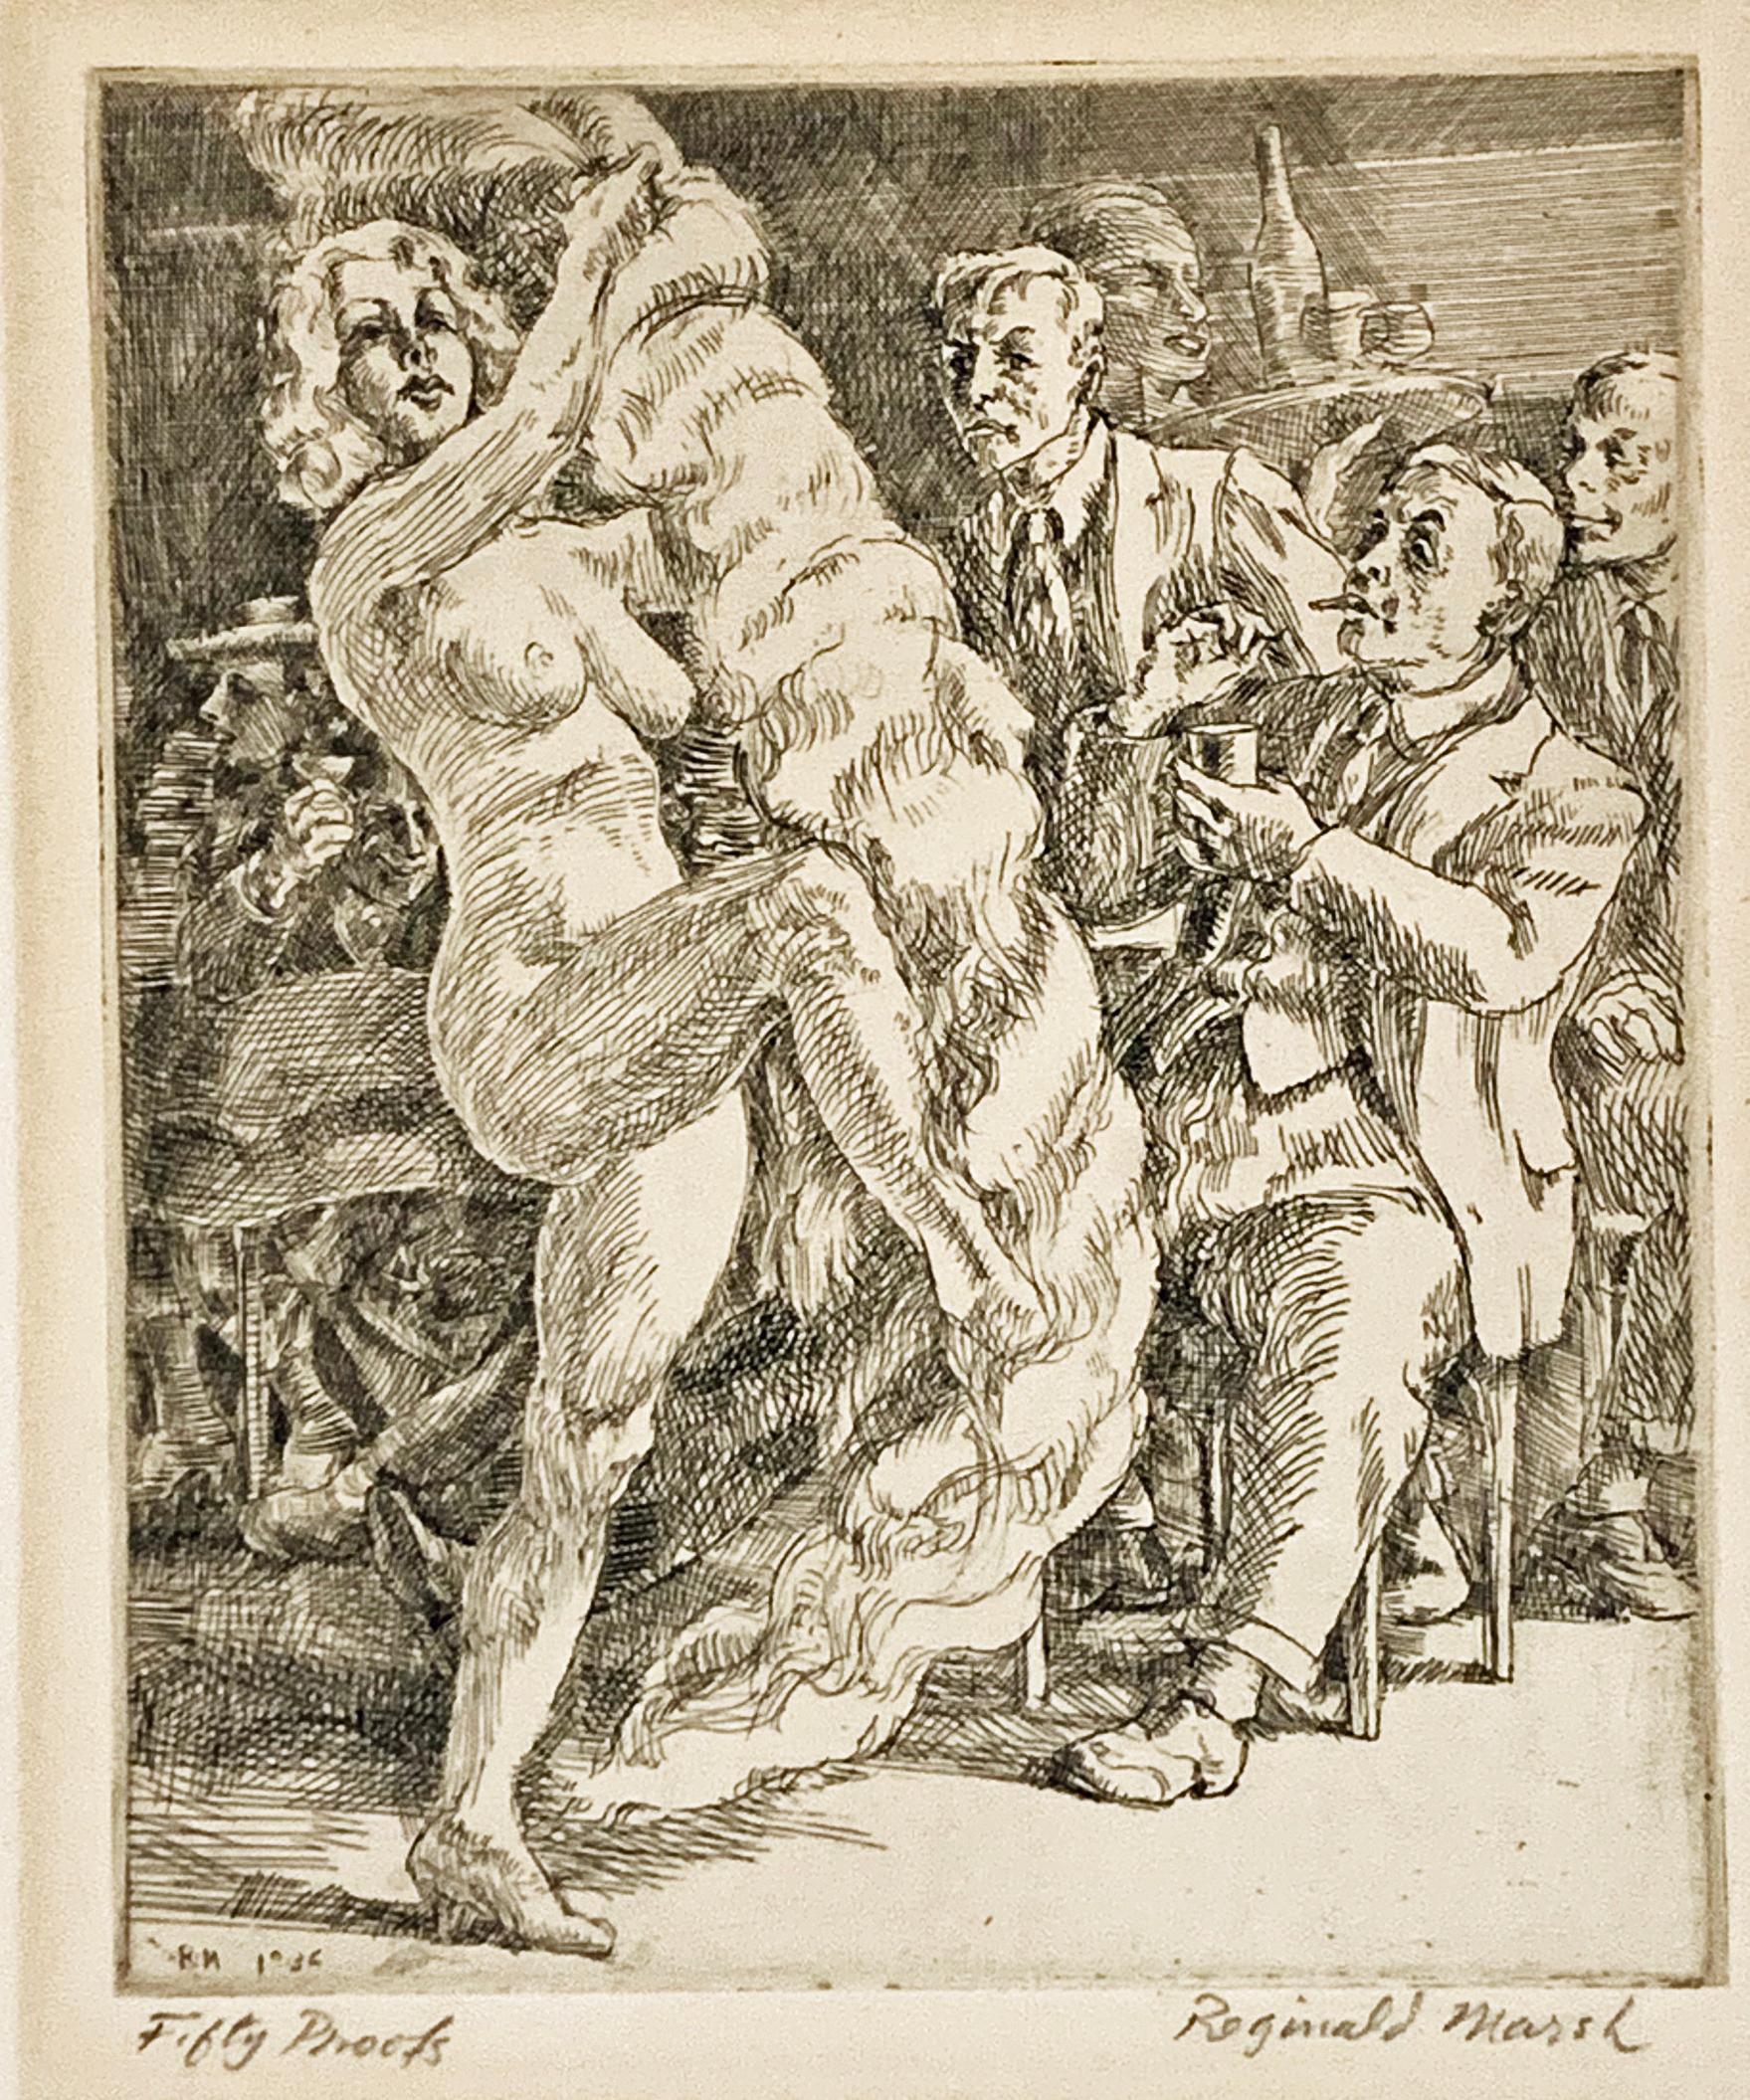 Reginald Marsh Figurative Print - FAN DANCE AT JIMMY KELLY'S